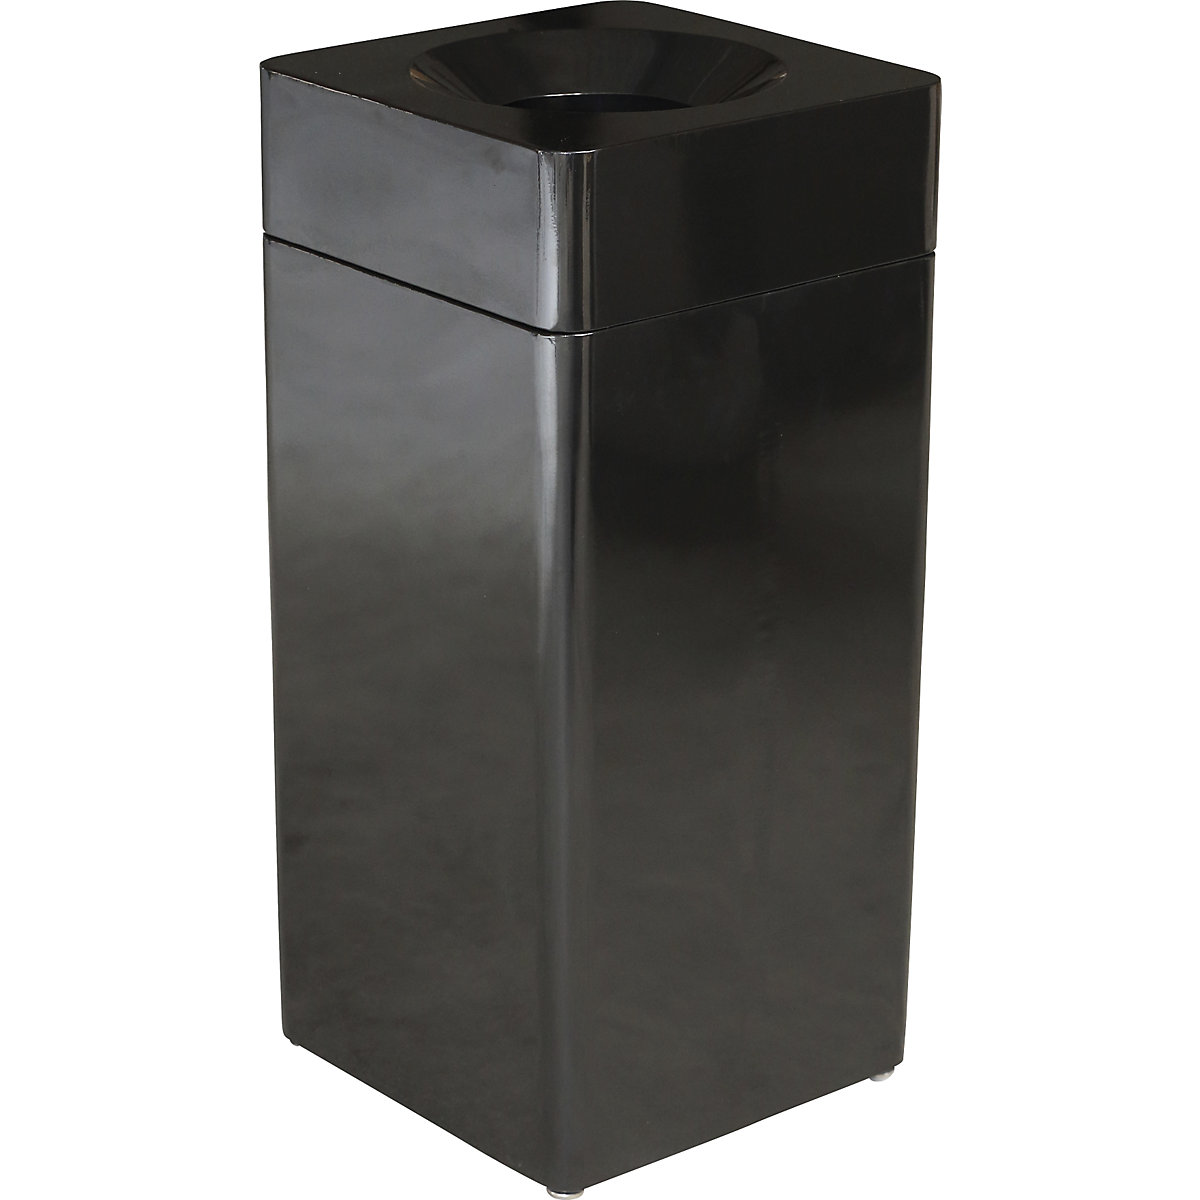 Abfallbehälter, quadratisch, Volumen 42 l, BxHxT 350 x 760 x 350 mm, schwarz